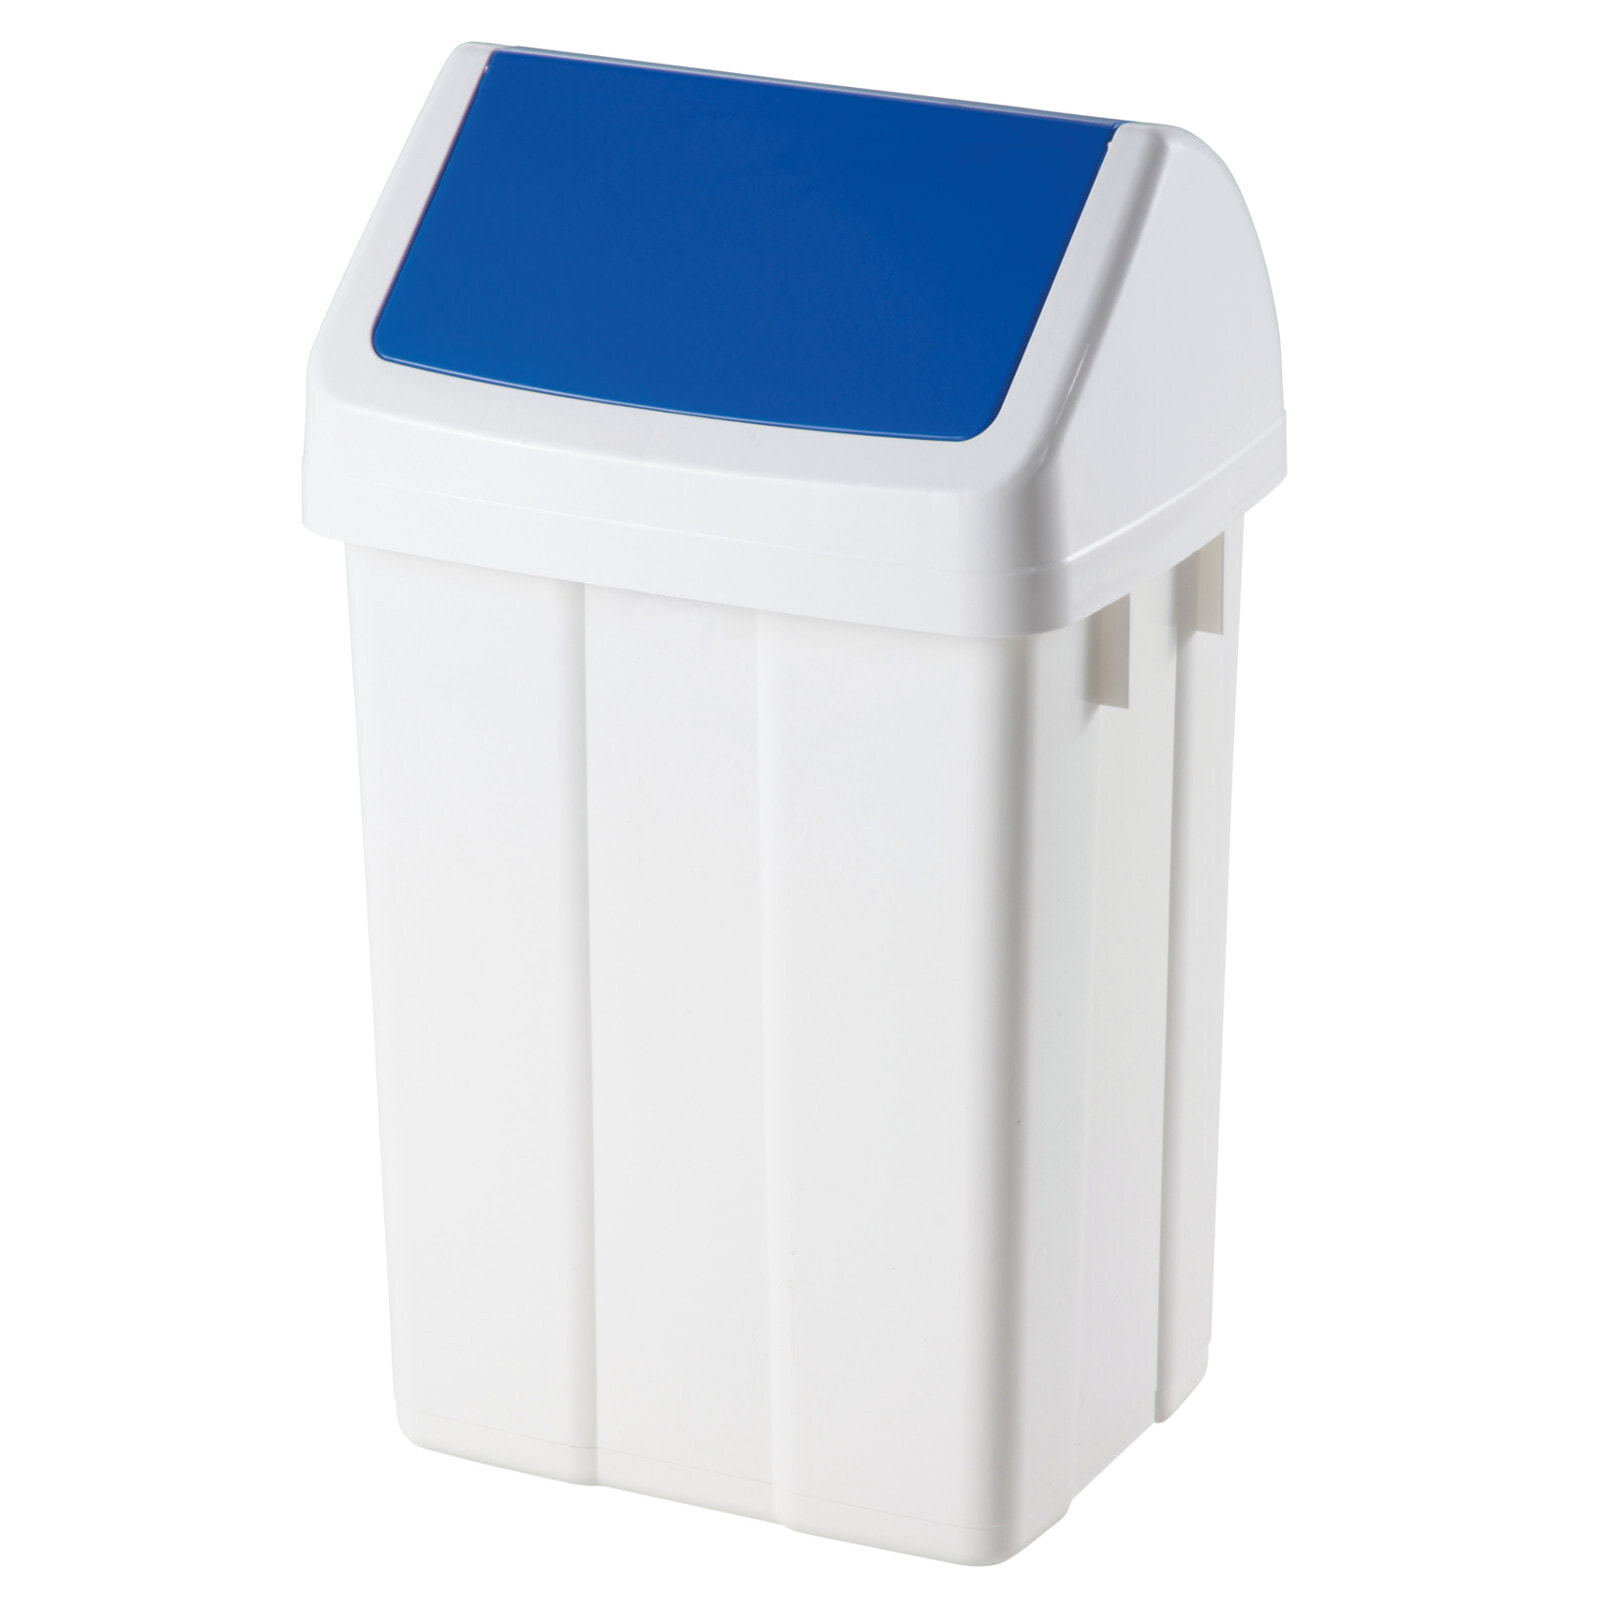 Trash bin for waste segregation - blue 25L